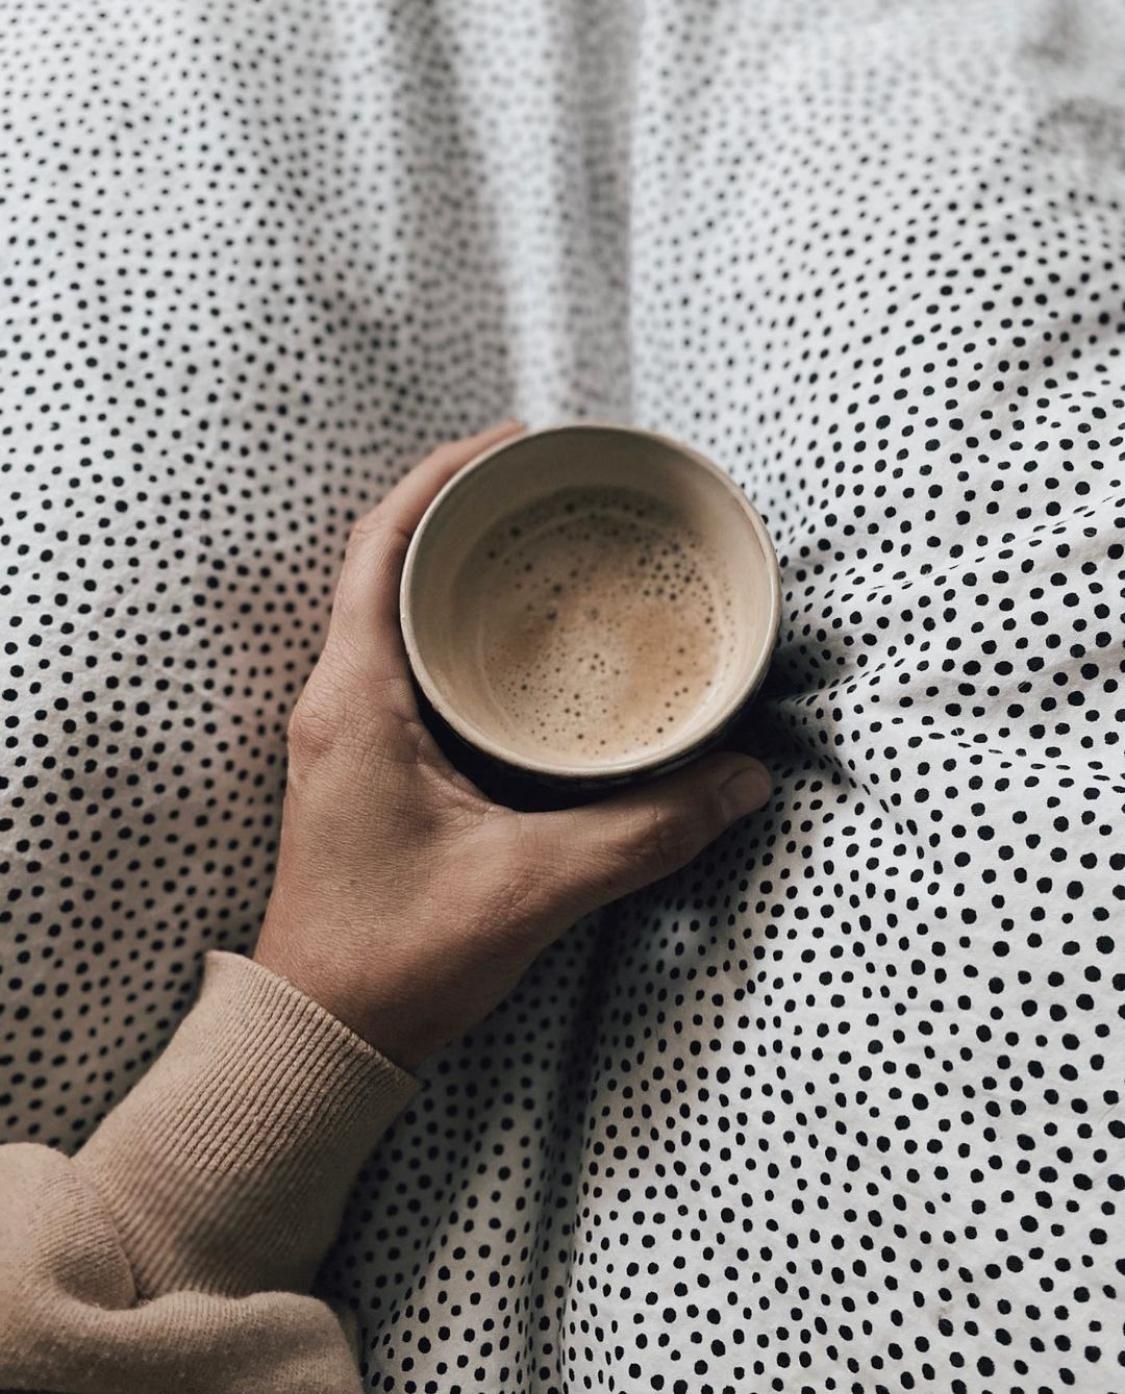 Pünktchen und Kaffee ♥️
#butfirstcoffee #couchstyle #punktebettwäsche #cozy #scandistyle #schlafzimmer